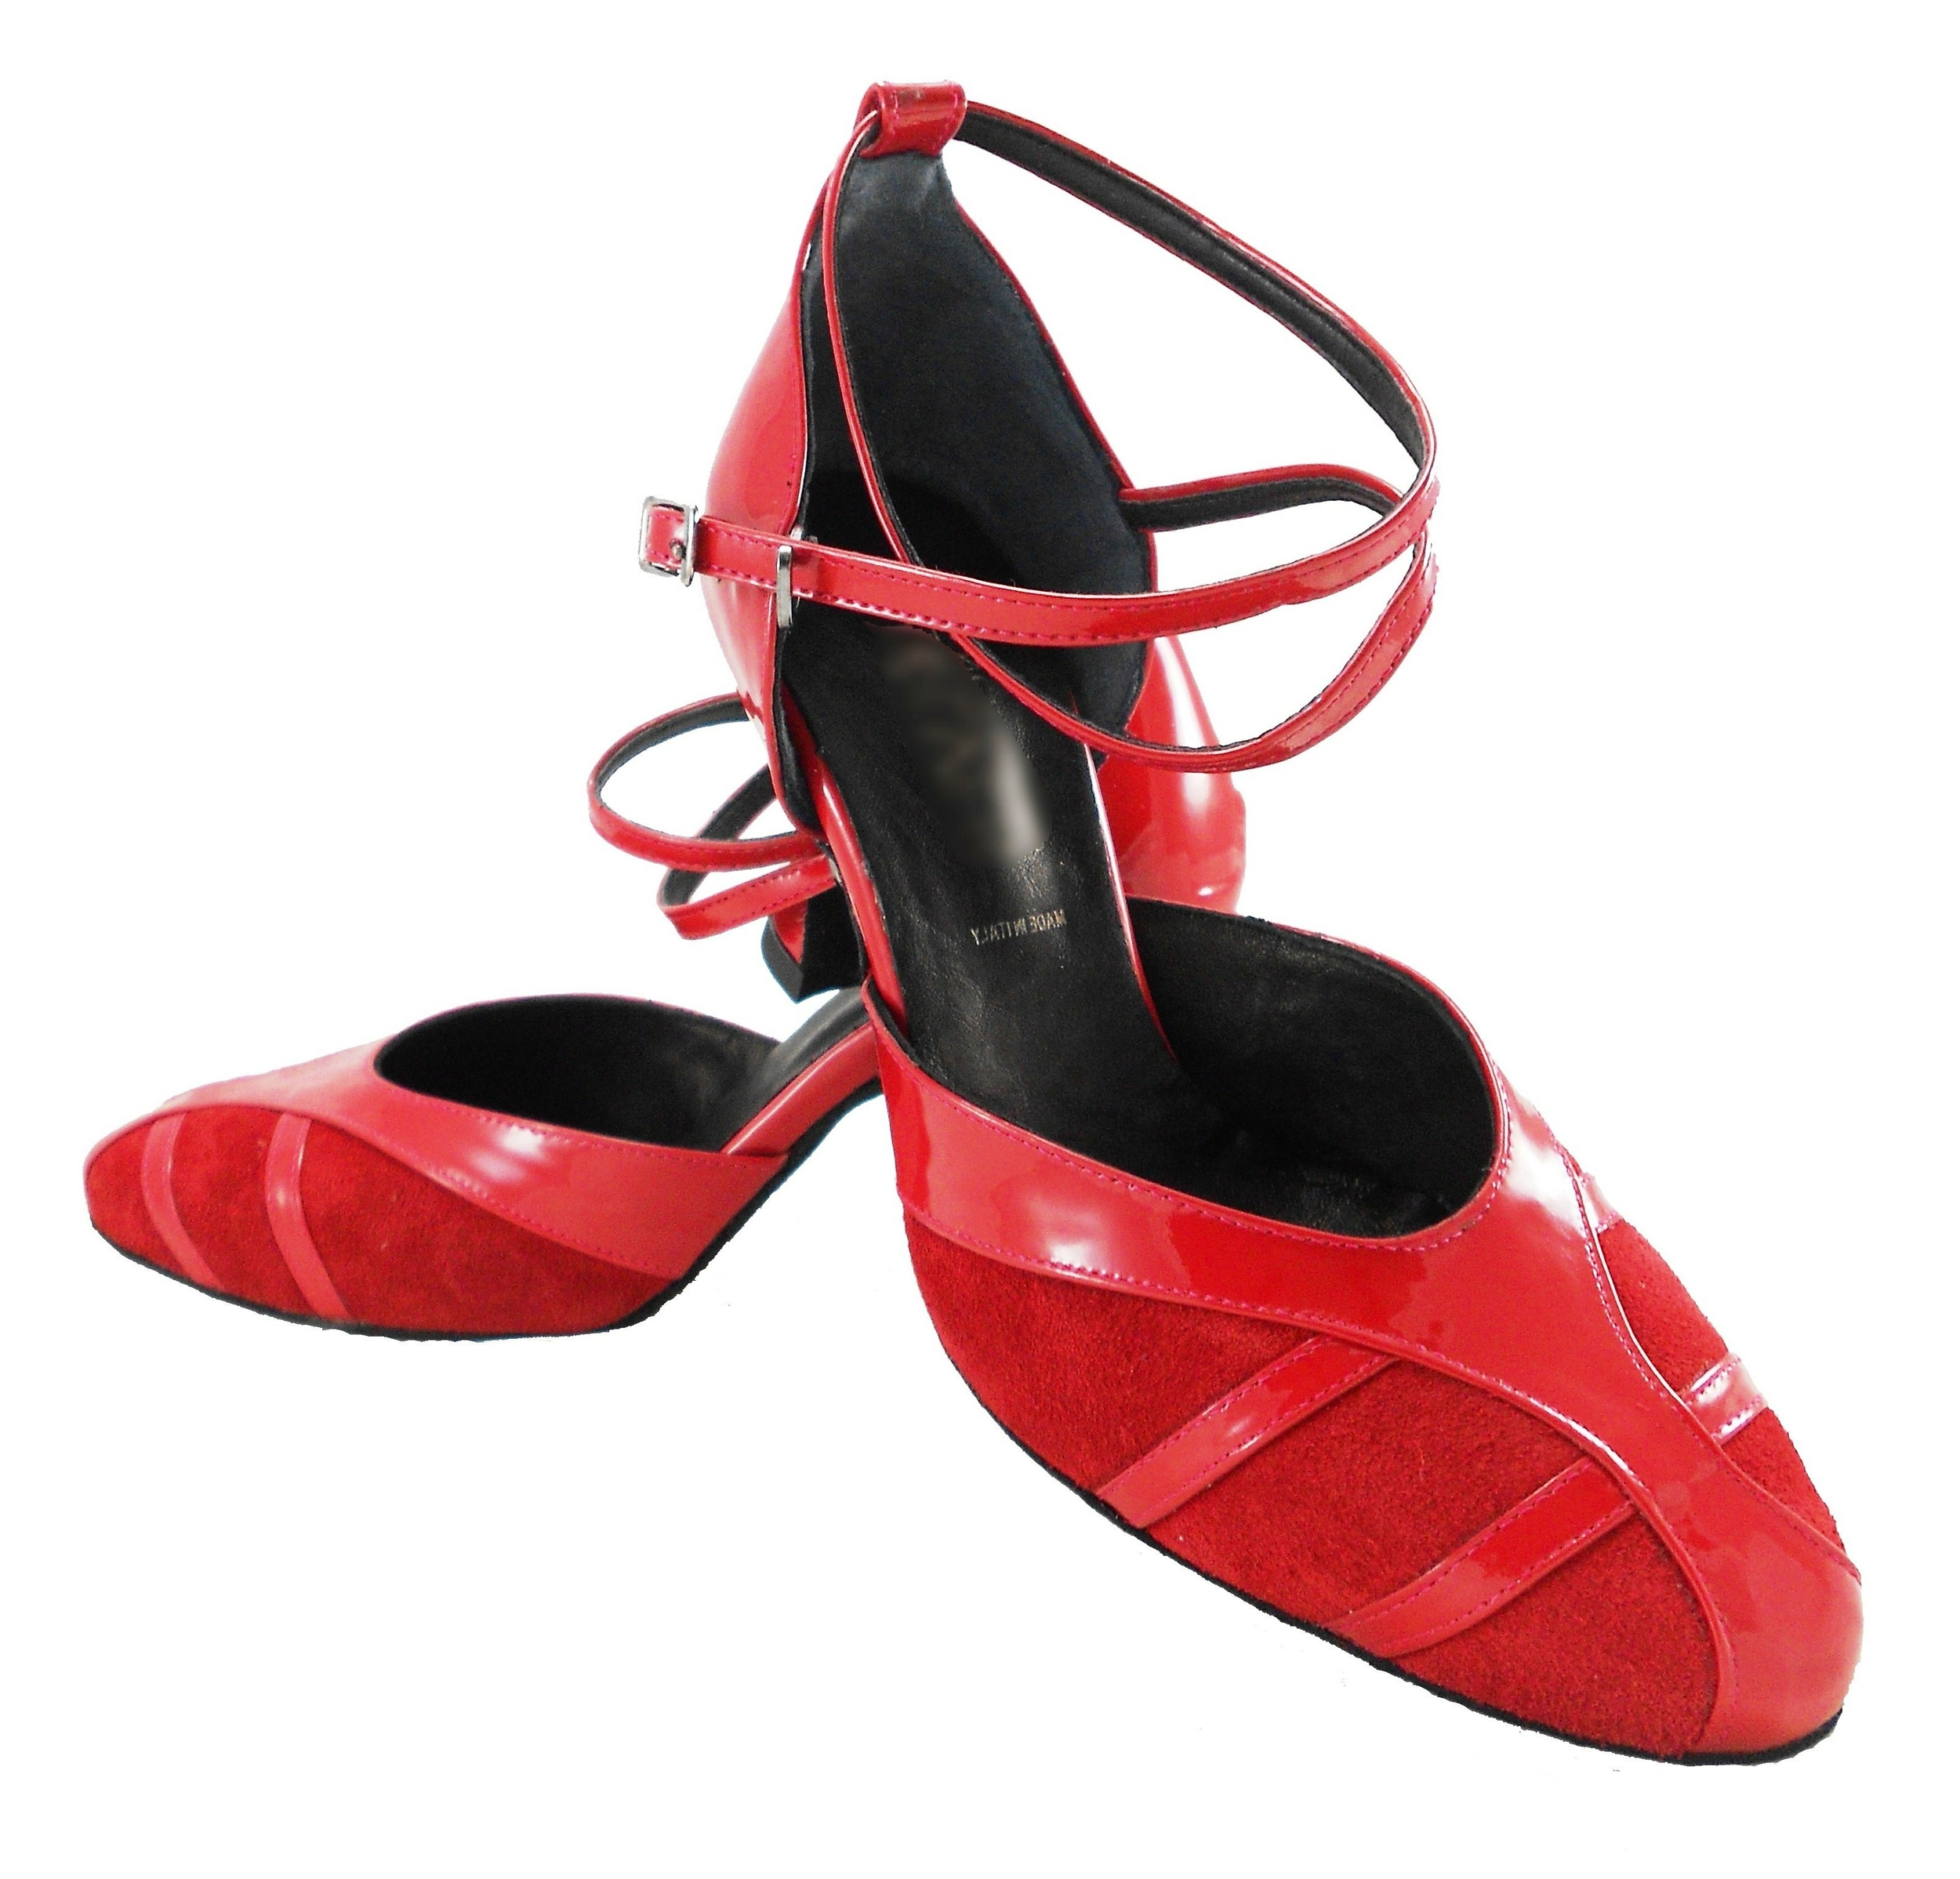 Chaussures de danse femme RAMONA ROUGE fermées peau et vernis Talon 7cm